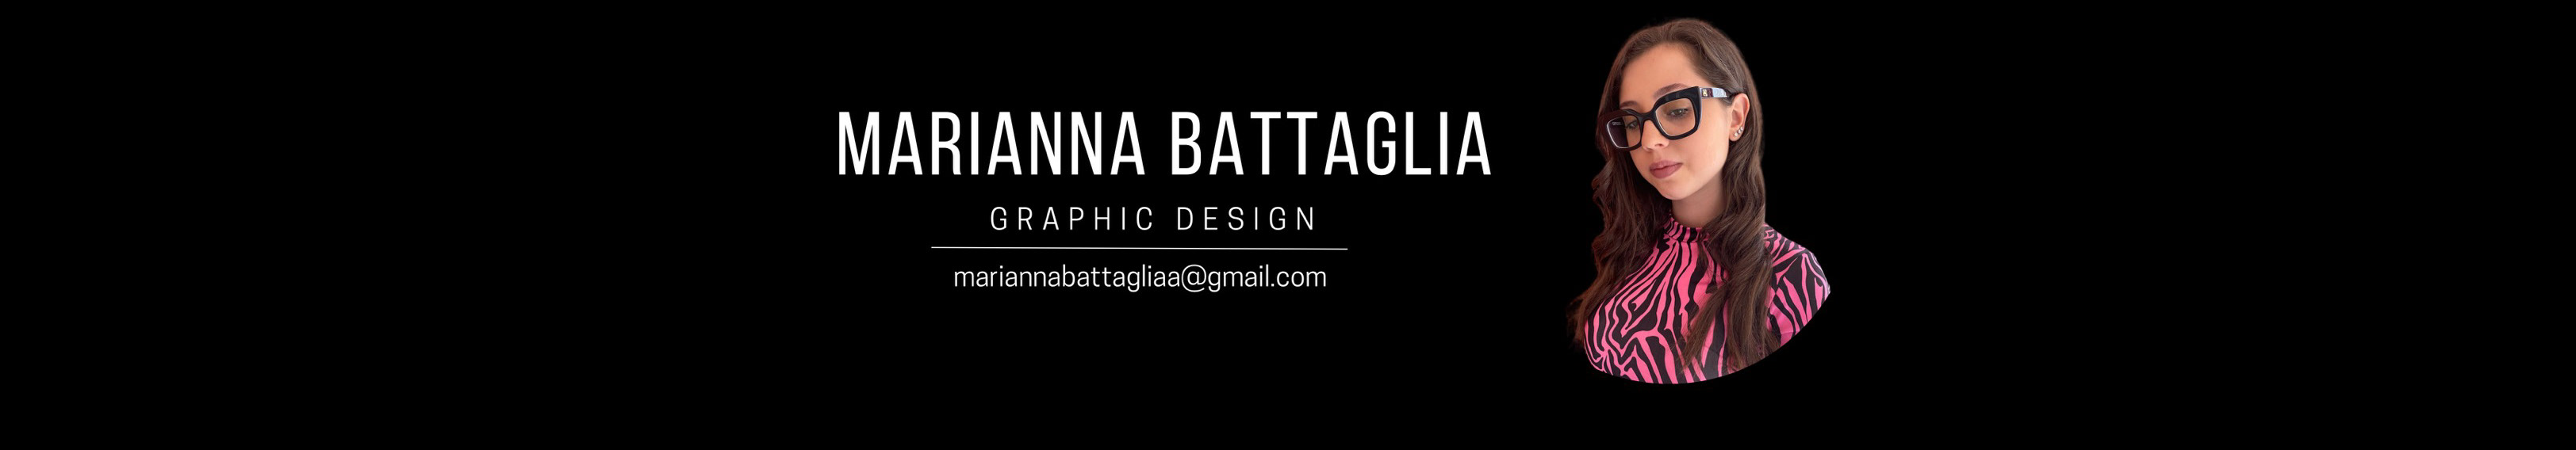 Marianna Battaglia's profile banner